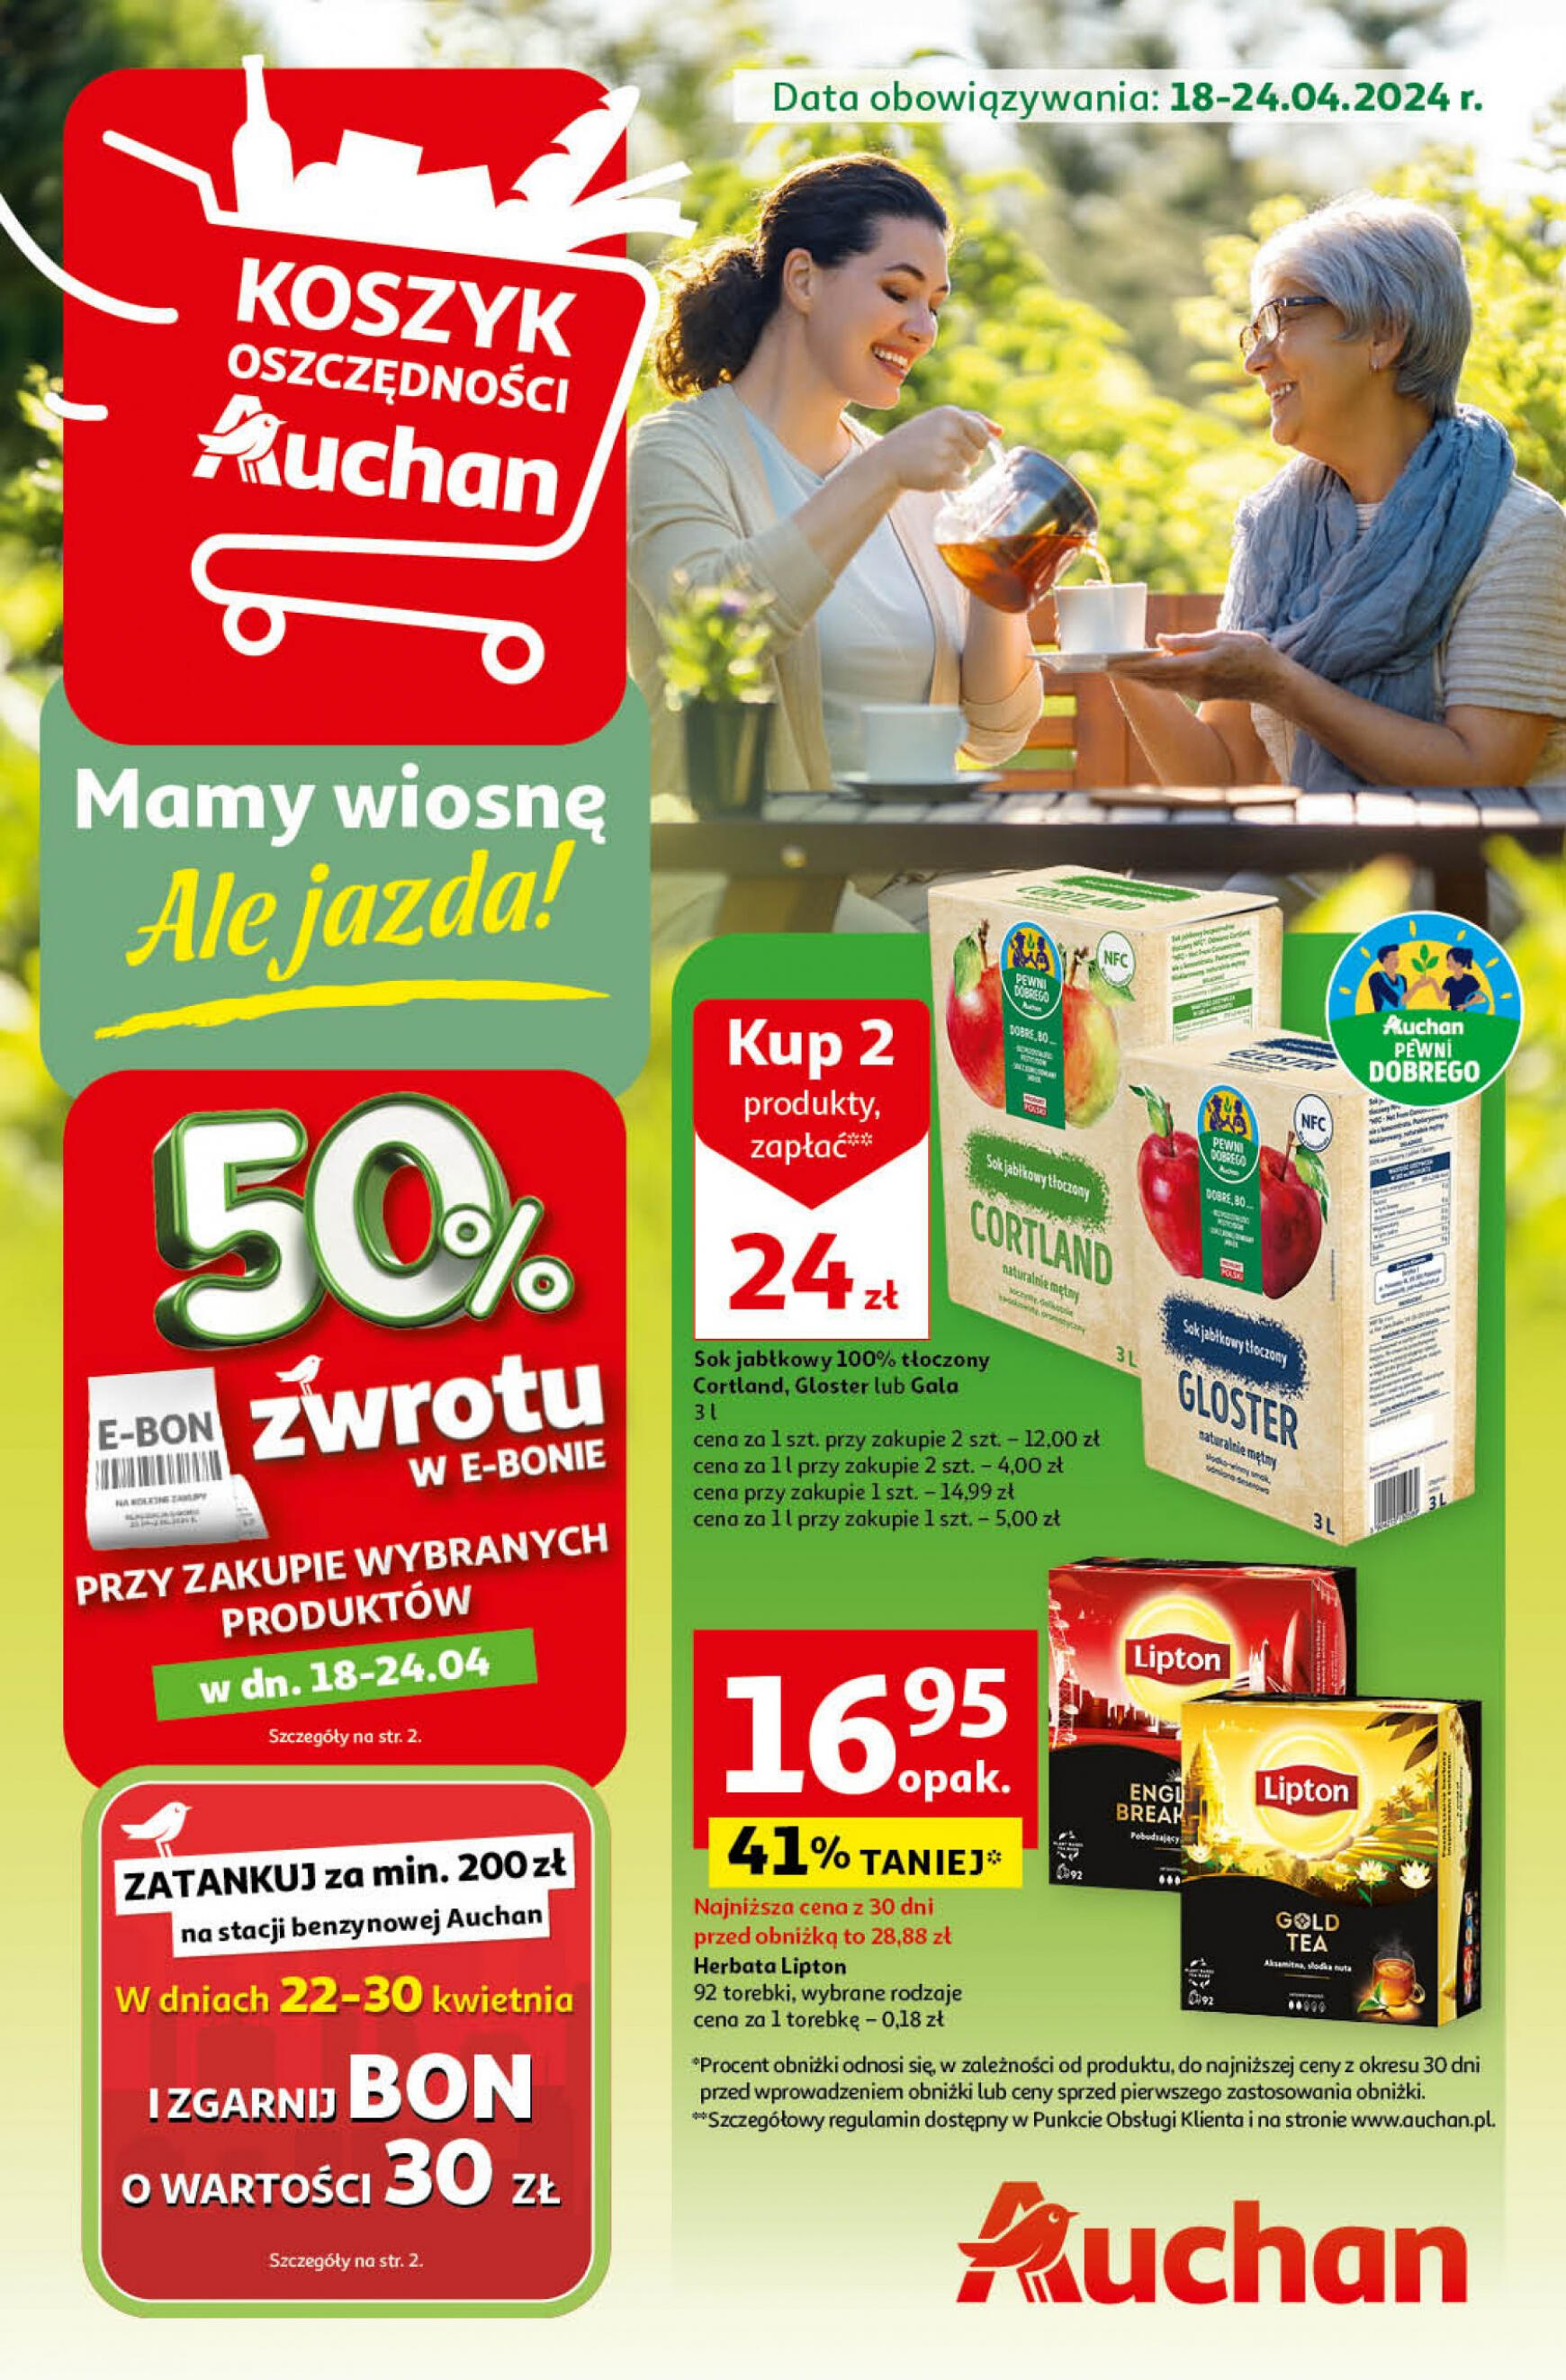 auchan - Hipermarket Auchan - Gazetka Mamy wiosnę Ale jazda! gazetka aktualna ważna od 18.04. - 24.04. - page: 1